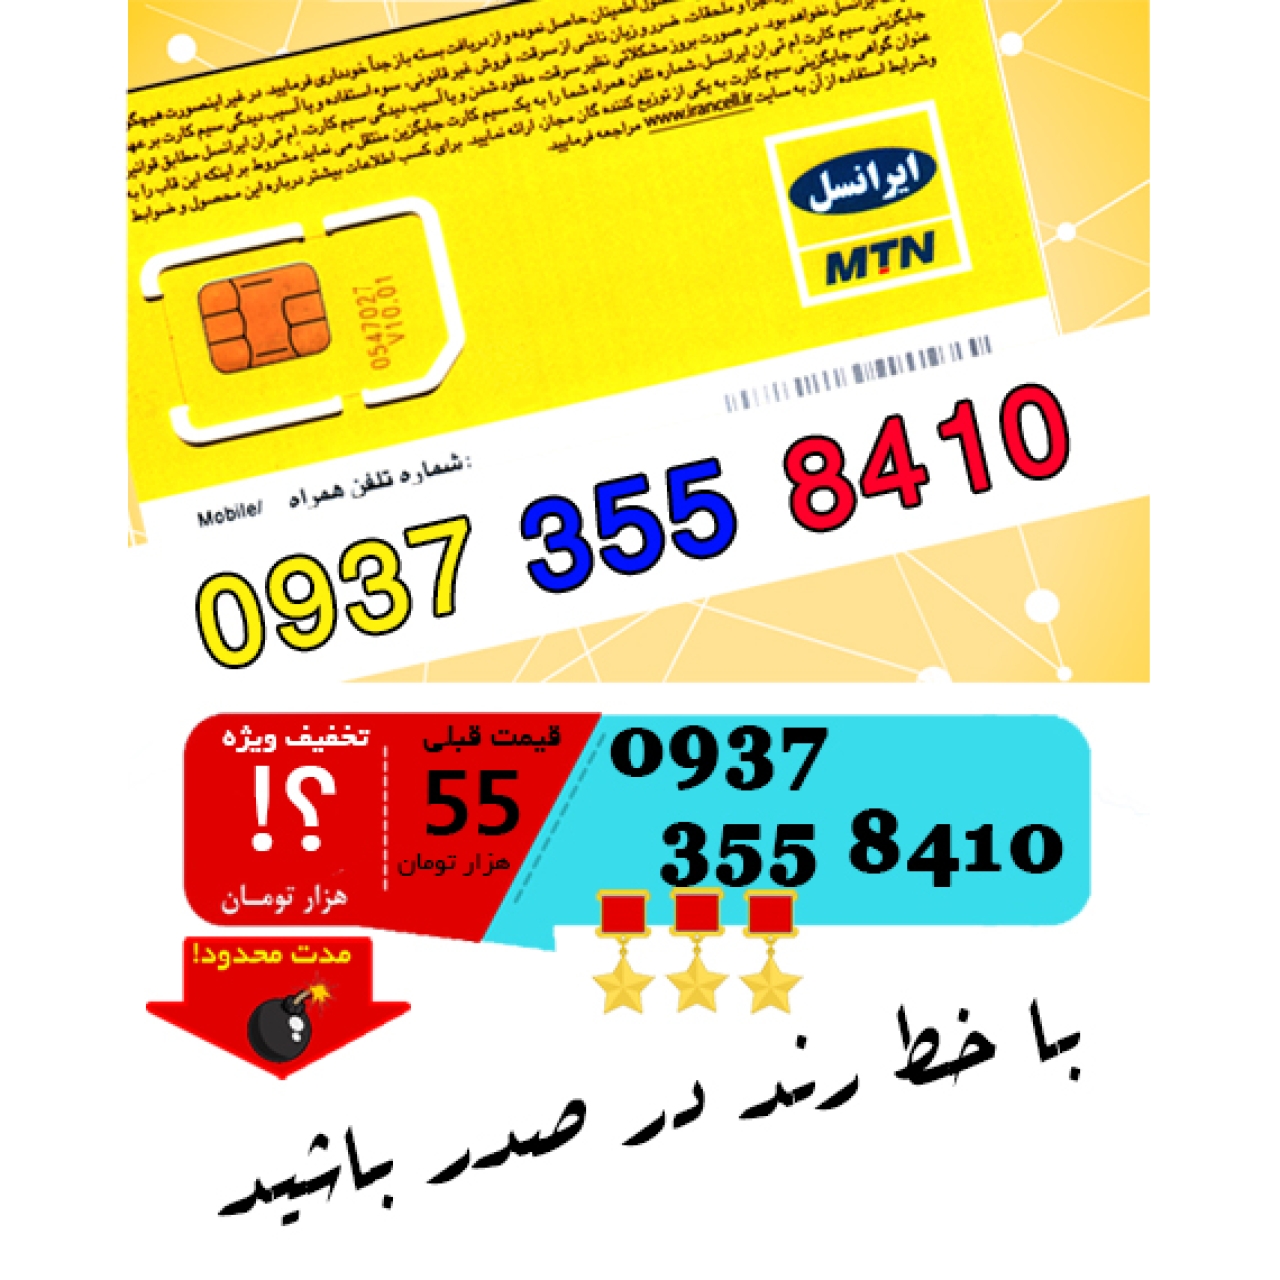 سیم کارت اعتباری ایرانسل 09373558410